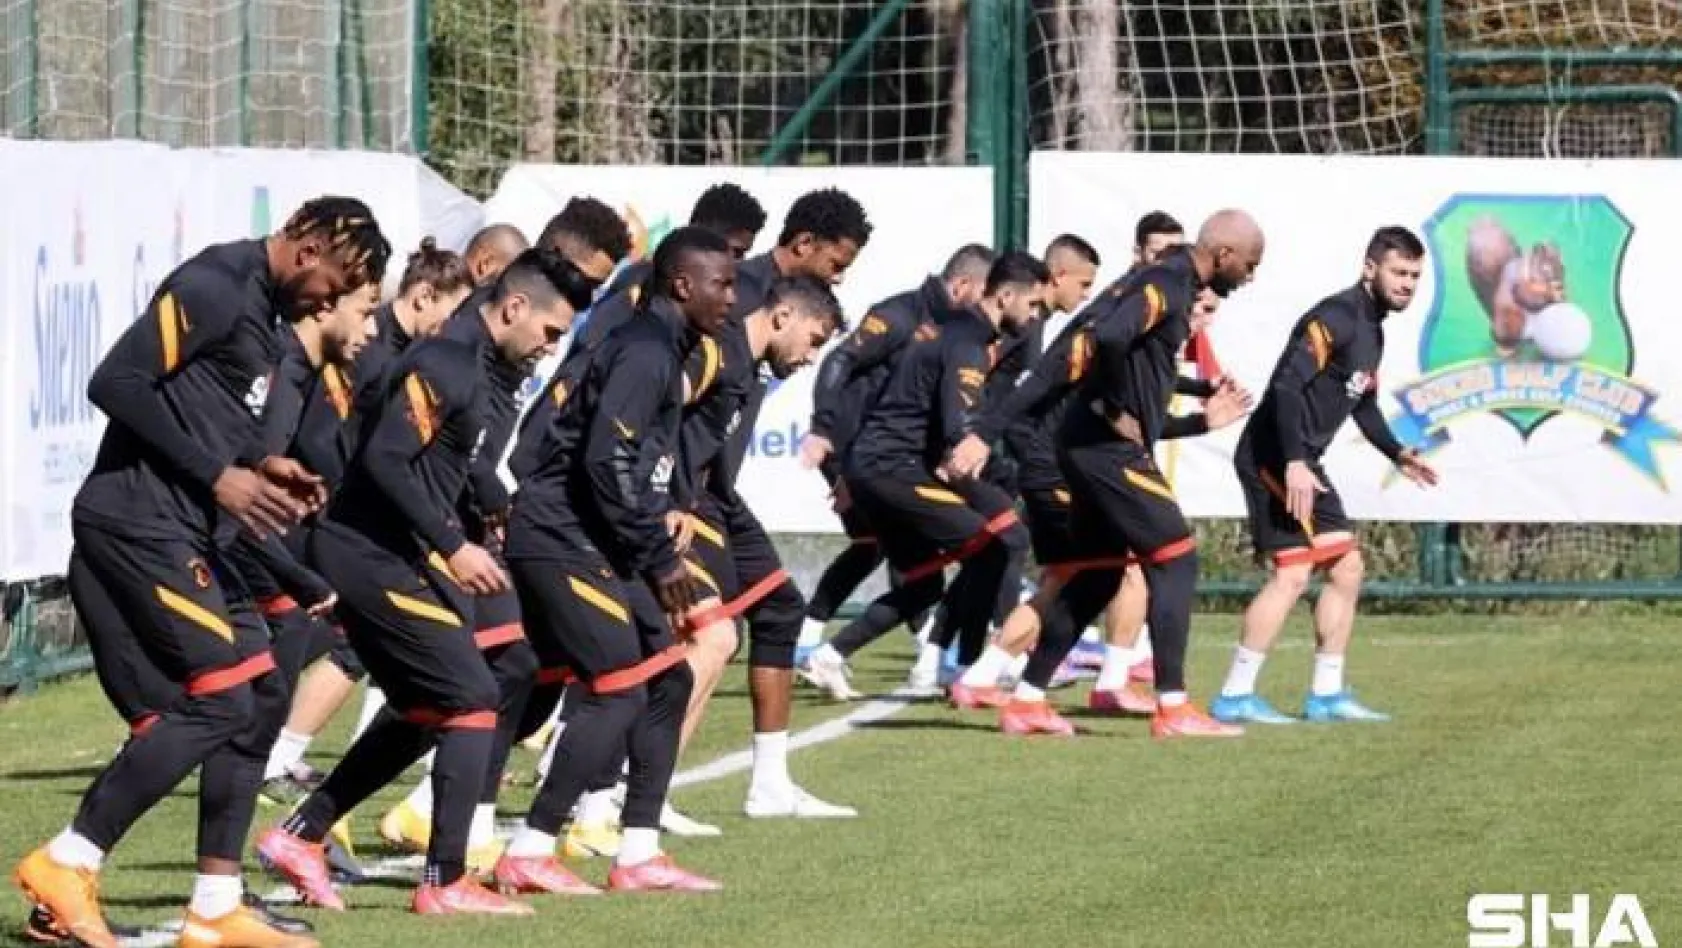 Galatasaray hazırlıklarını Antalya'da sürdürdü